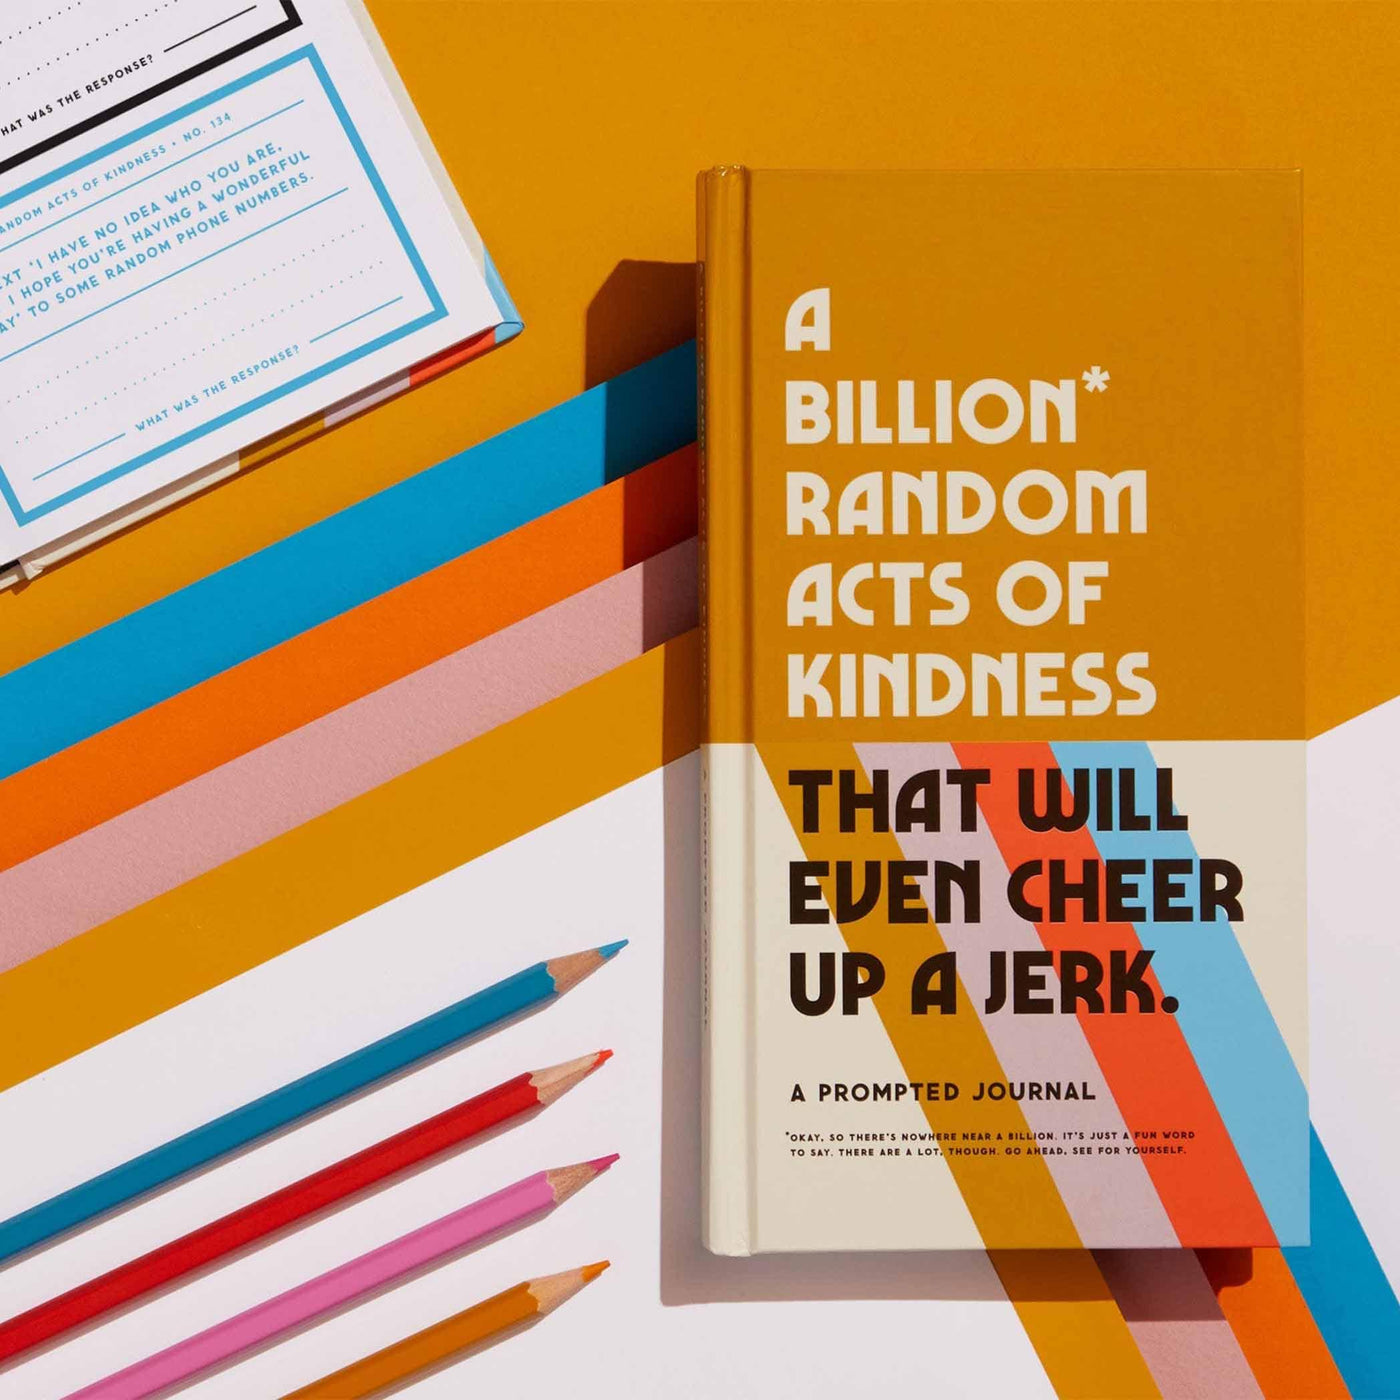 Explorez l'amour et la gentillesse avec 'A Billion Random Acts of Kindness' de Brass Monkey. Des idées positives et interactives pour répandre la joie au quotidien.